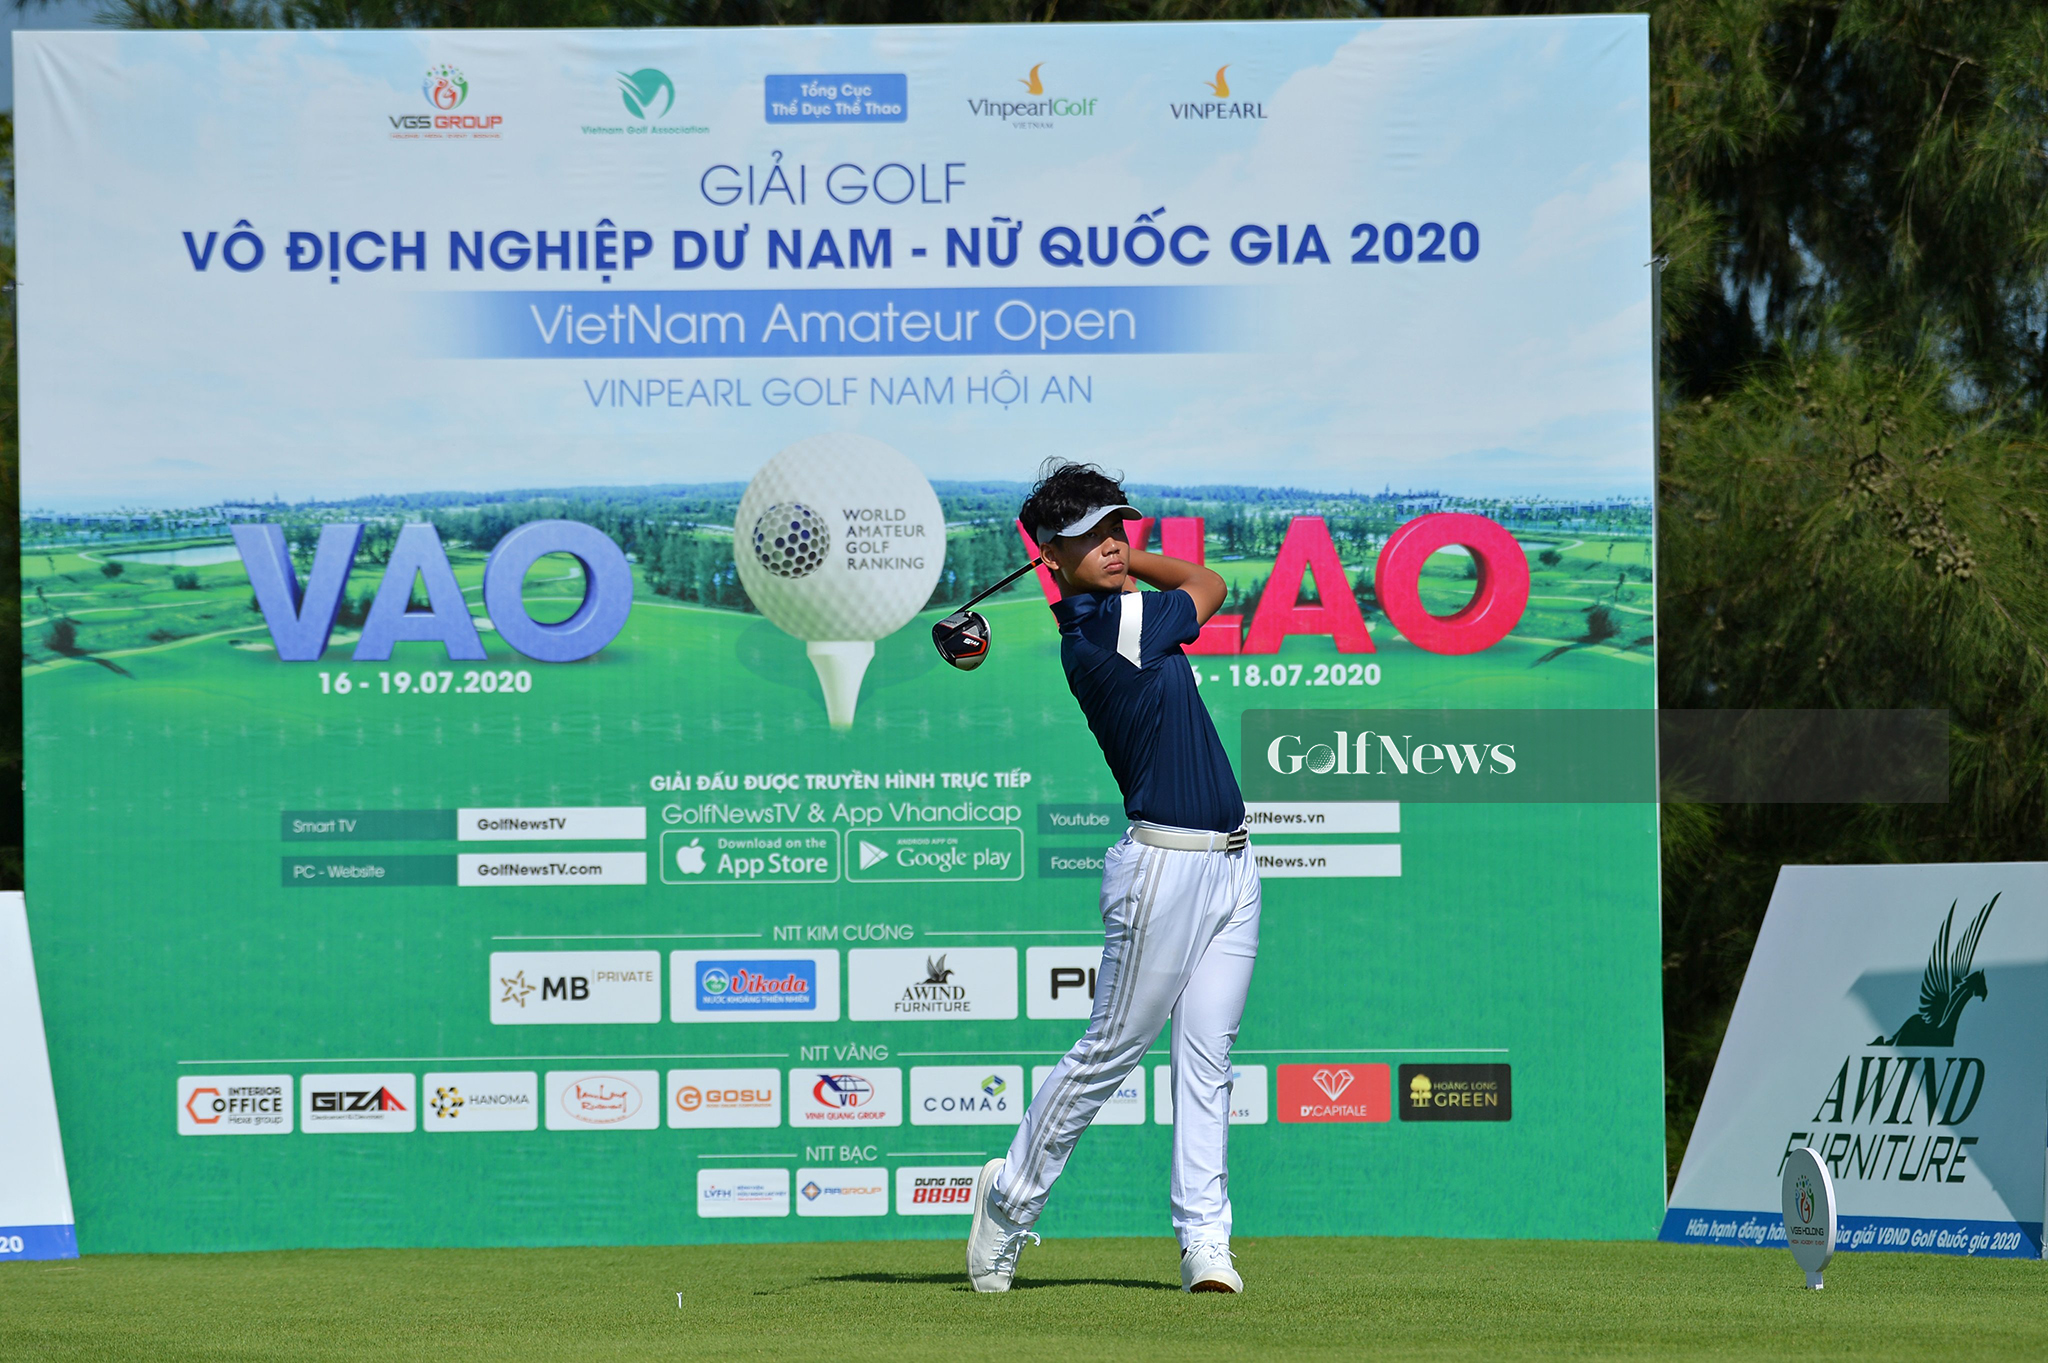 Ghi 5 birdie, Đặng Quang Anh dẫn đầu vòng 1 VAO 2020